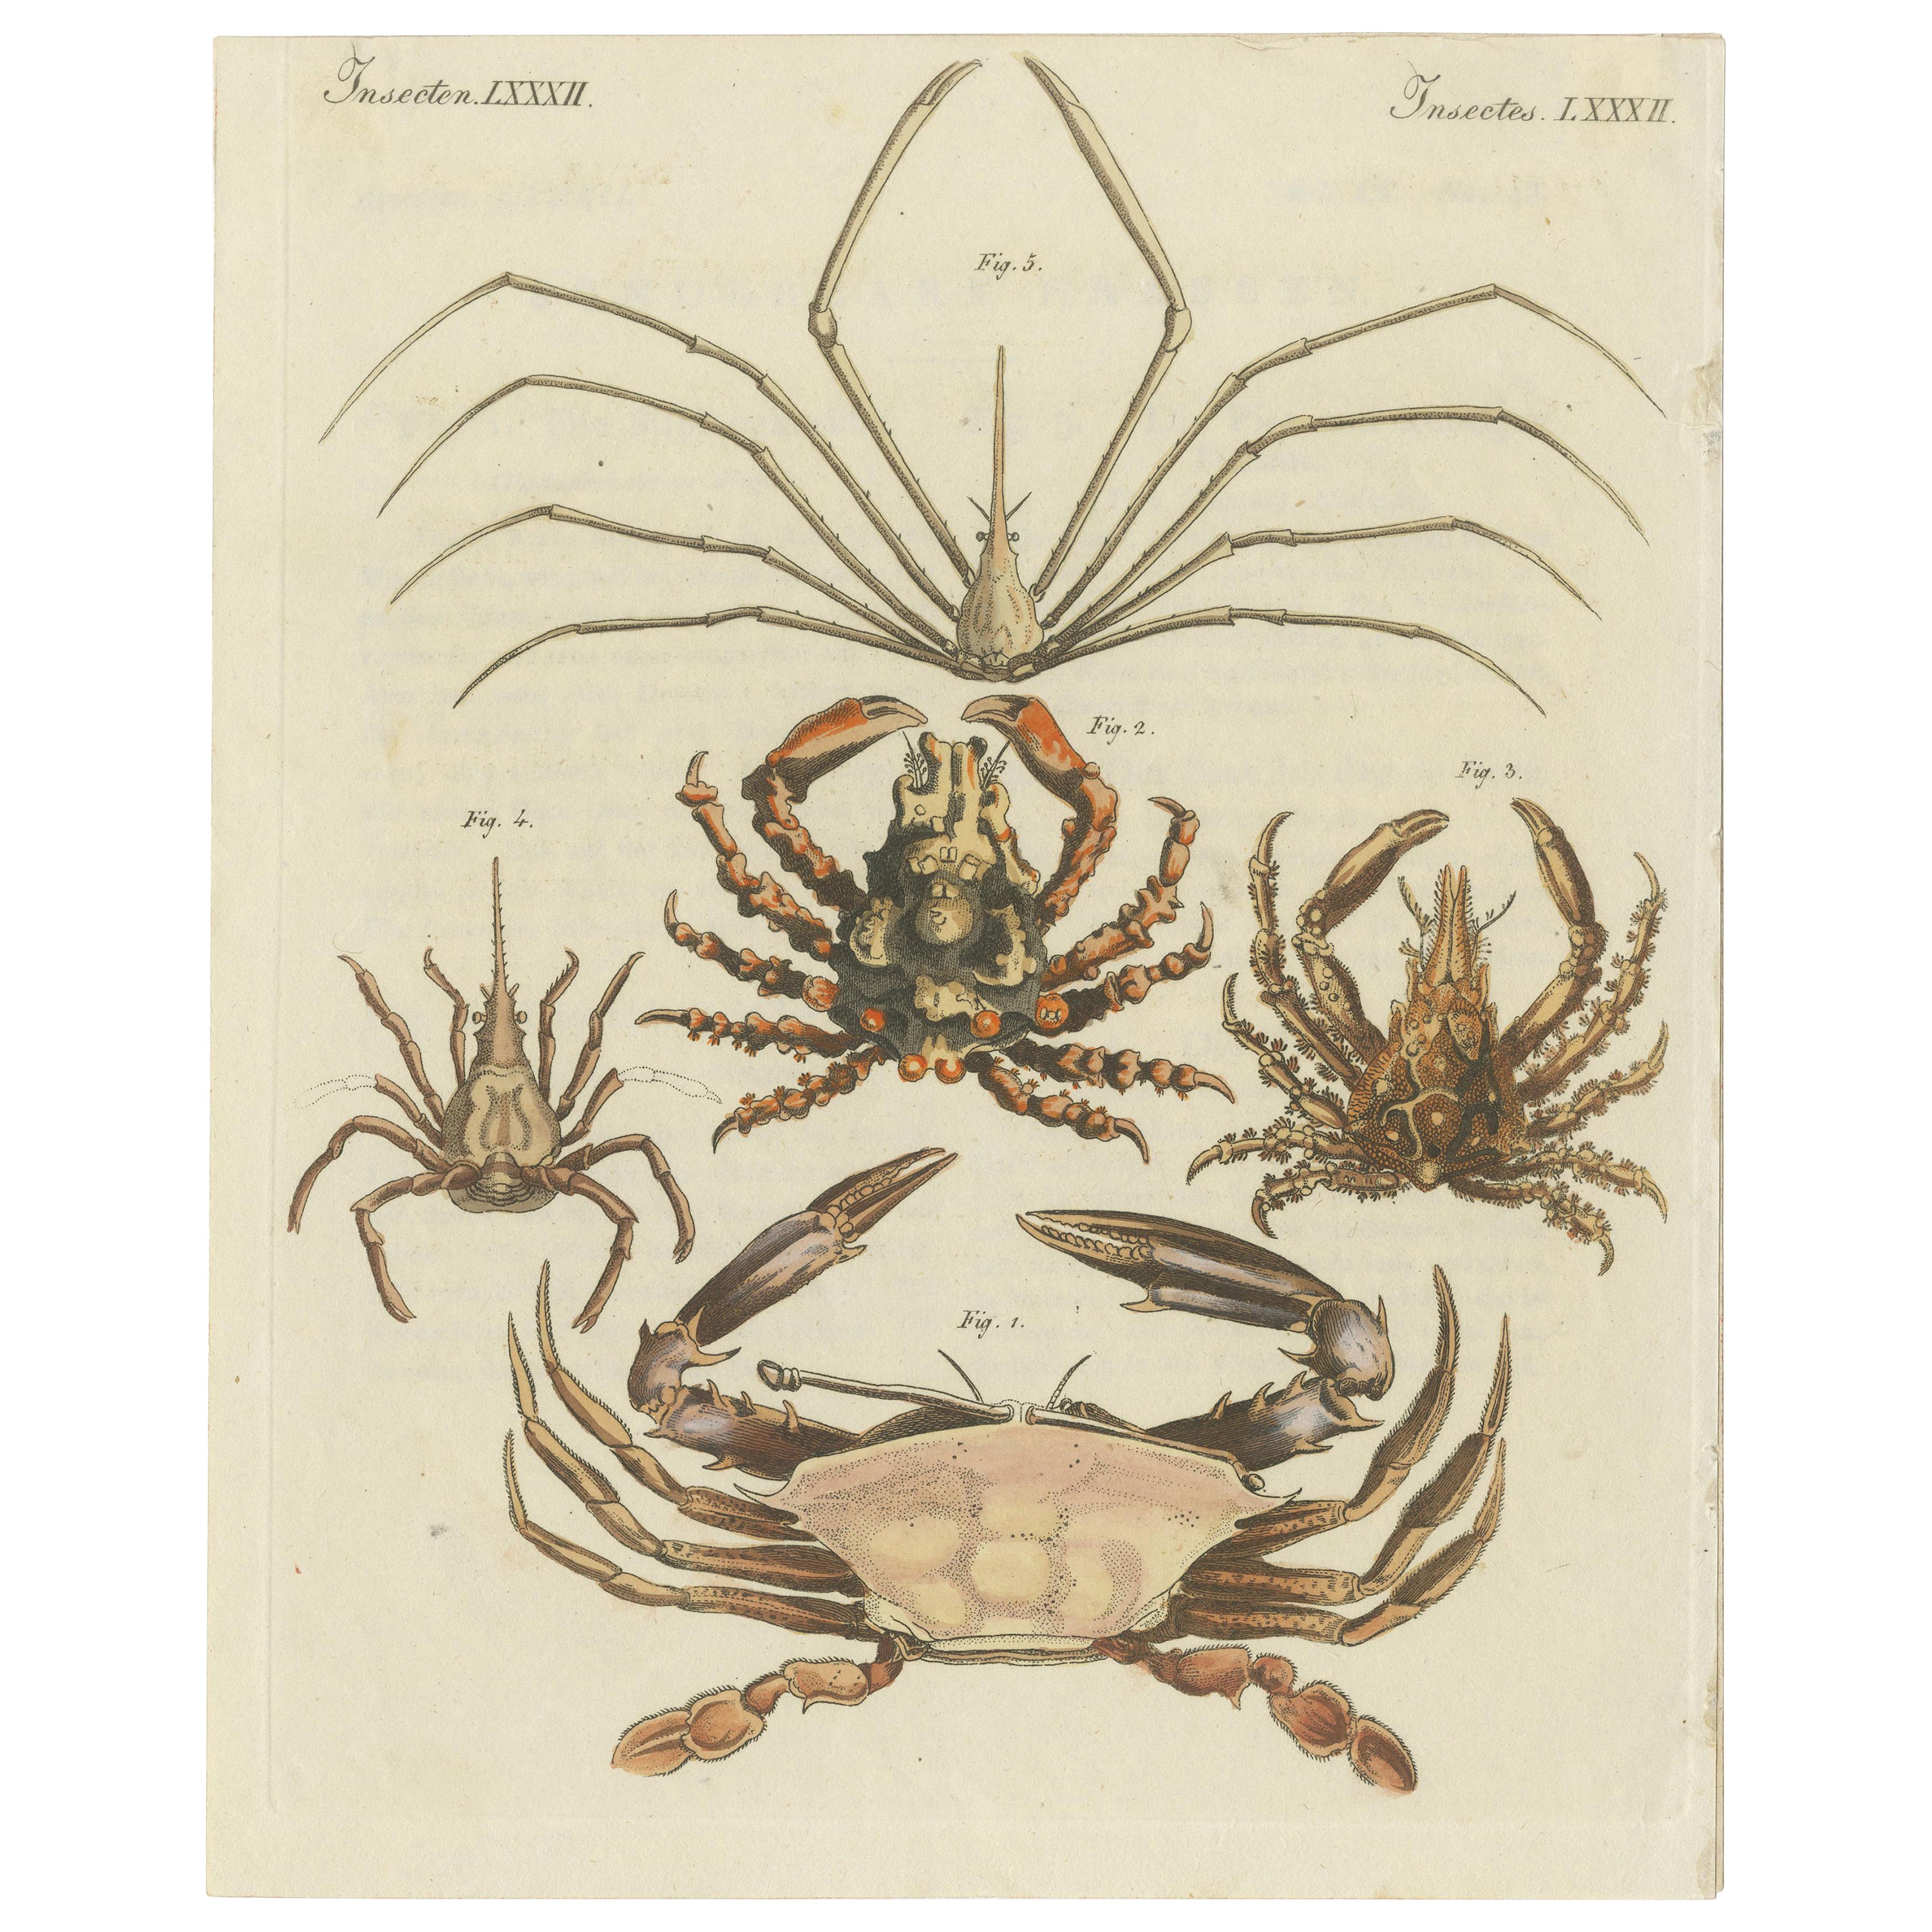 Impression ancienne de diverses spécifications de crabe, dont un crabe nageant